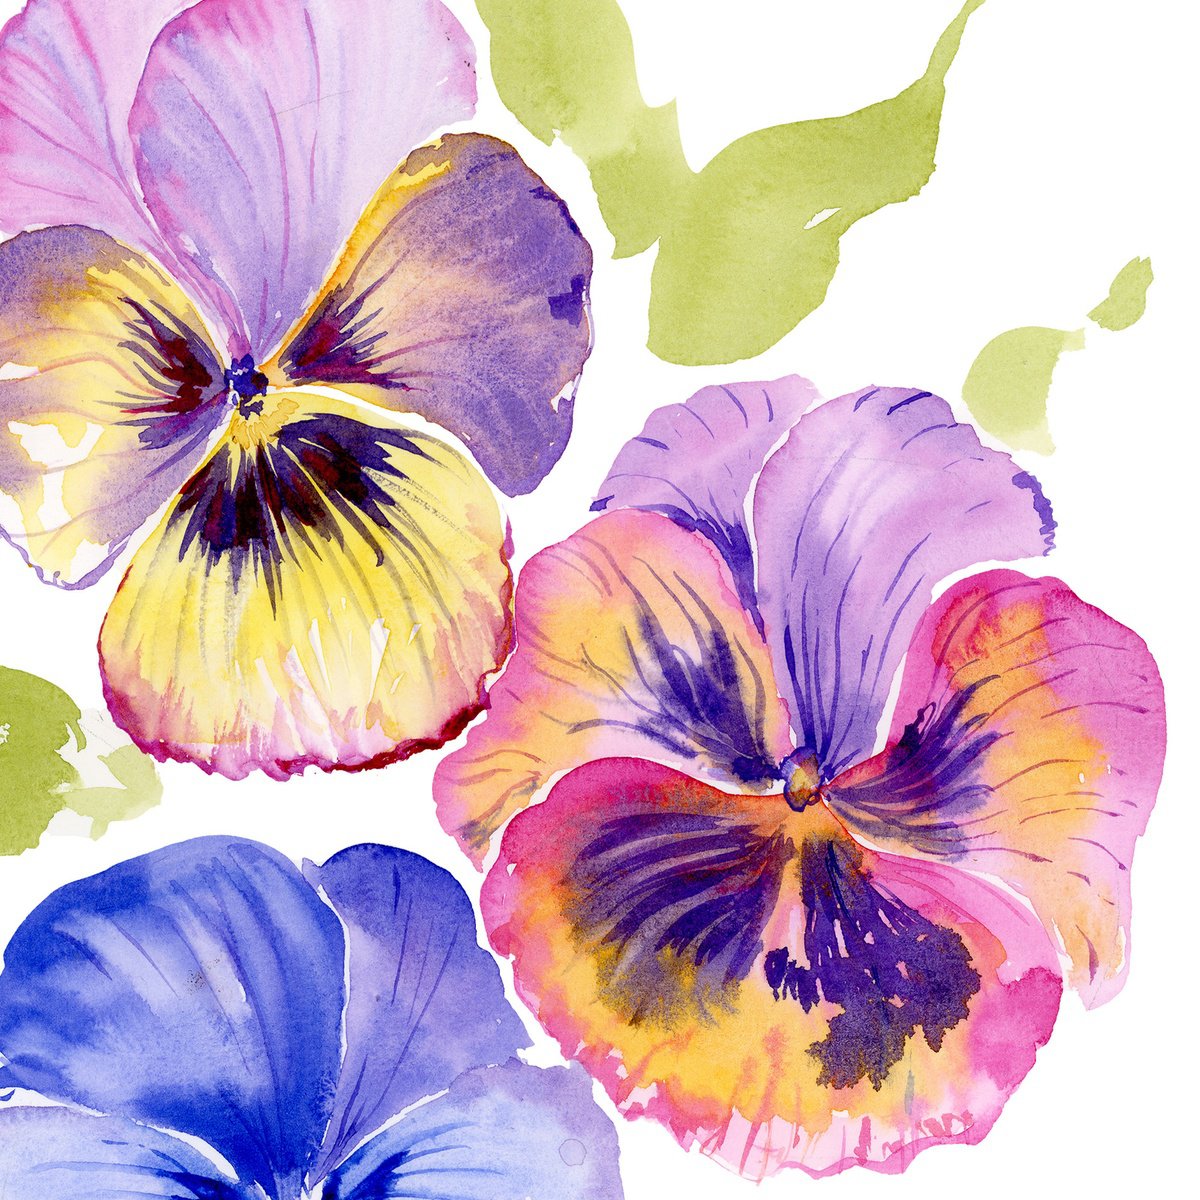 Bright Pansies watercolor by Olga Koelsch